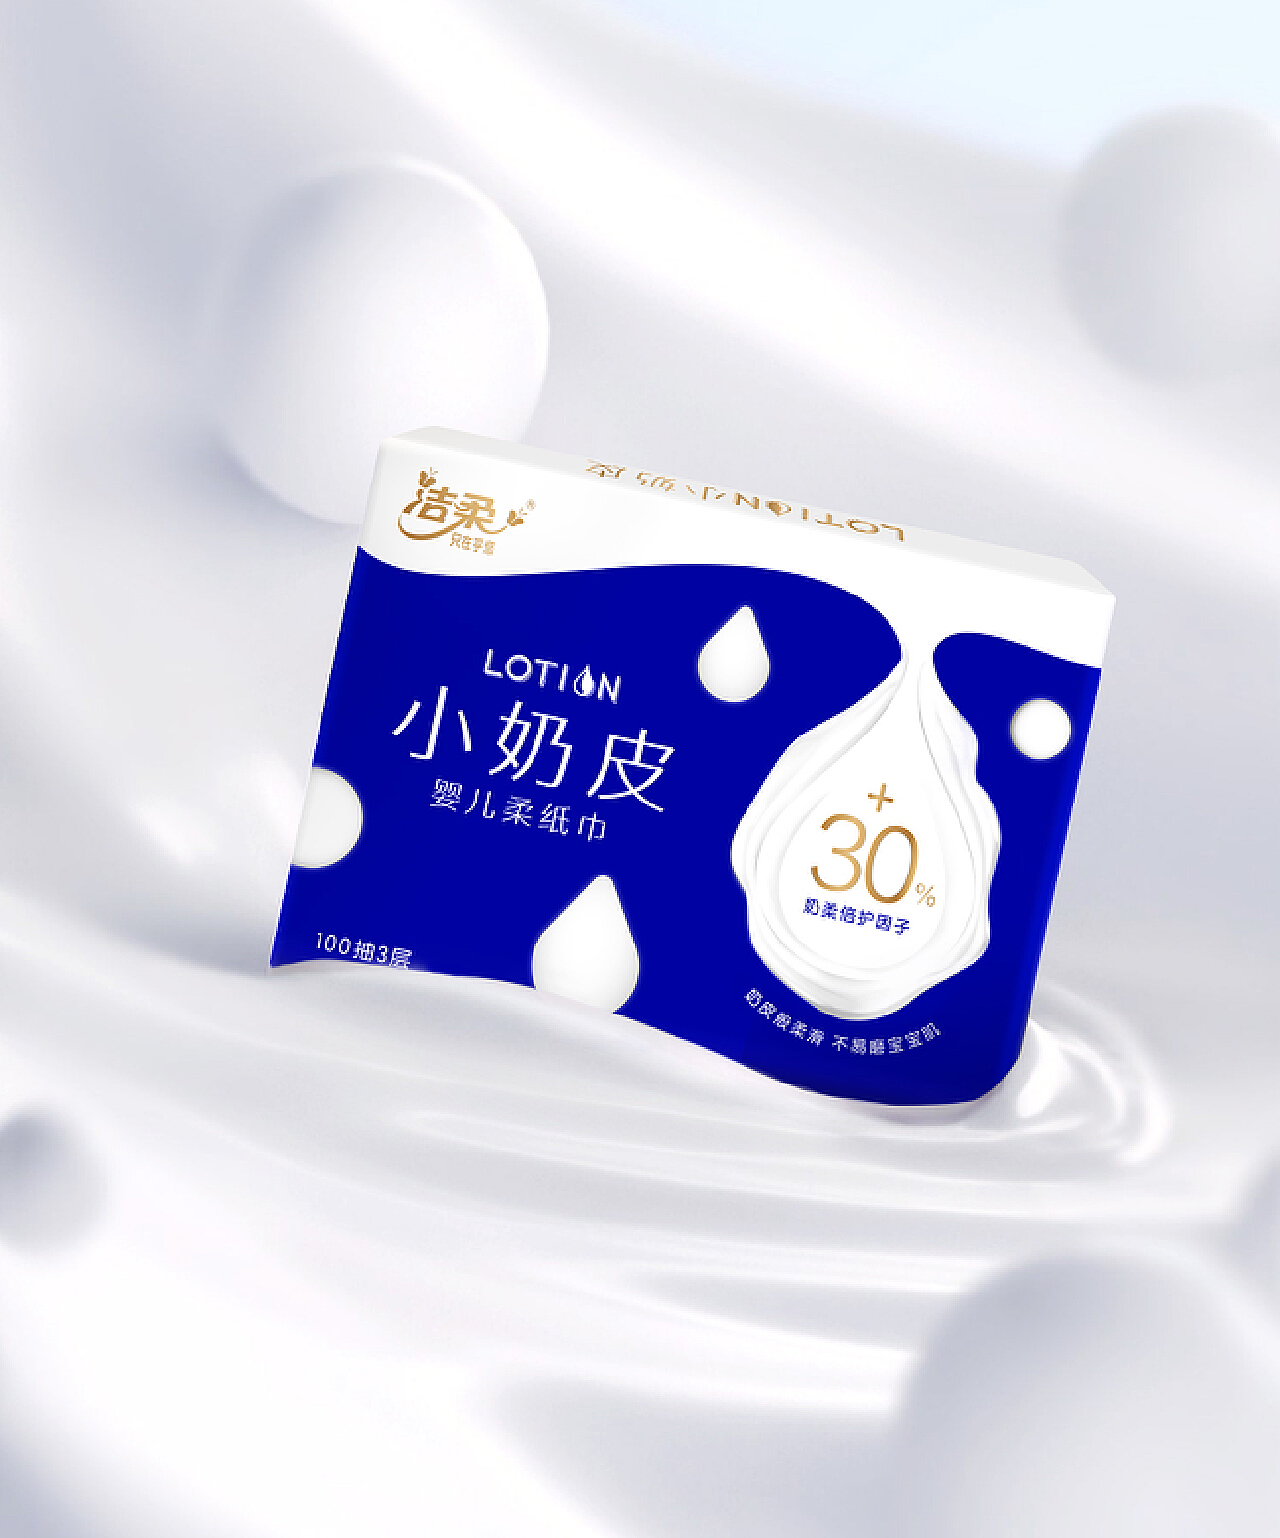 南京生活用纸展结束，民众热衷追捧“乳霜保湿纸”你知道吗？